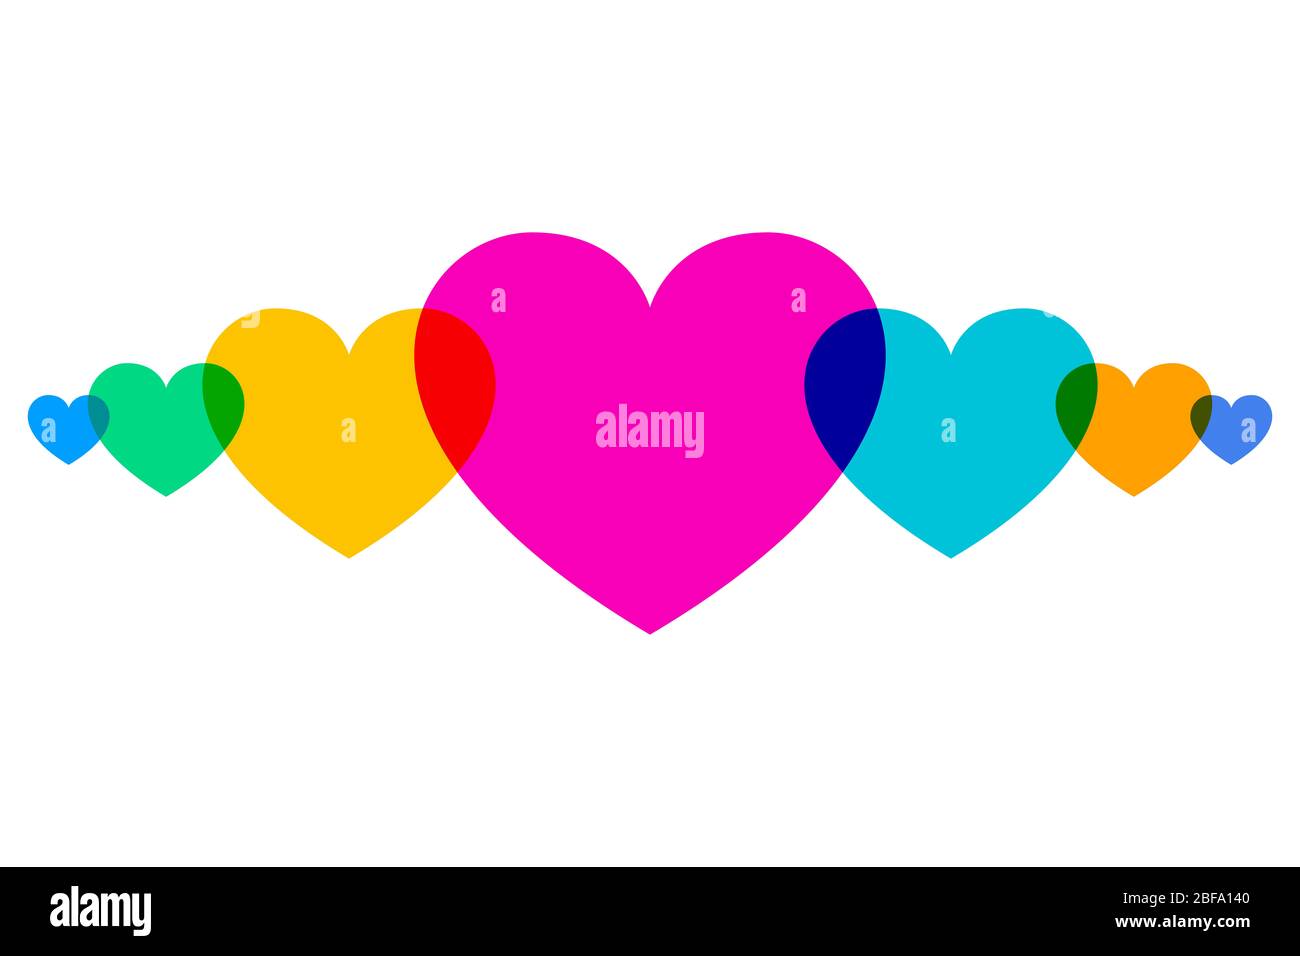 Überlappende, mehrfarbige Herzformen in einer Reihe. Herz-Symbole für den Einsatz als Hintergrund oder für Grußkarten, um Emotionen wie romantische Liebe auszudrücken. Stockfoto